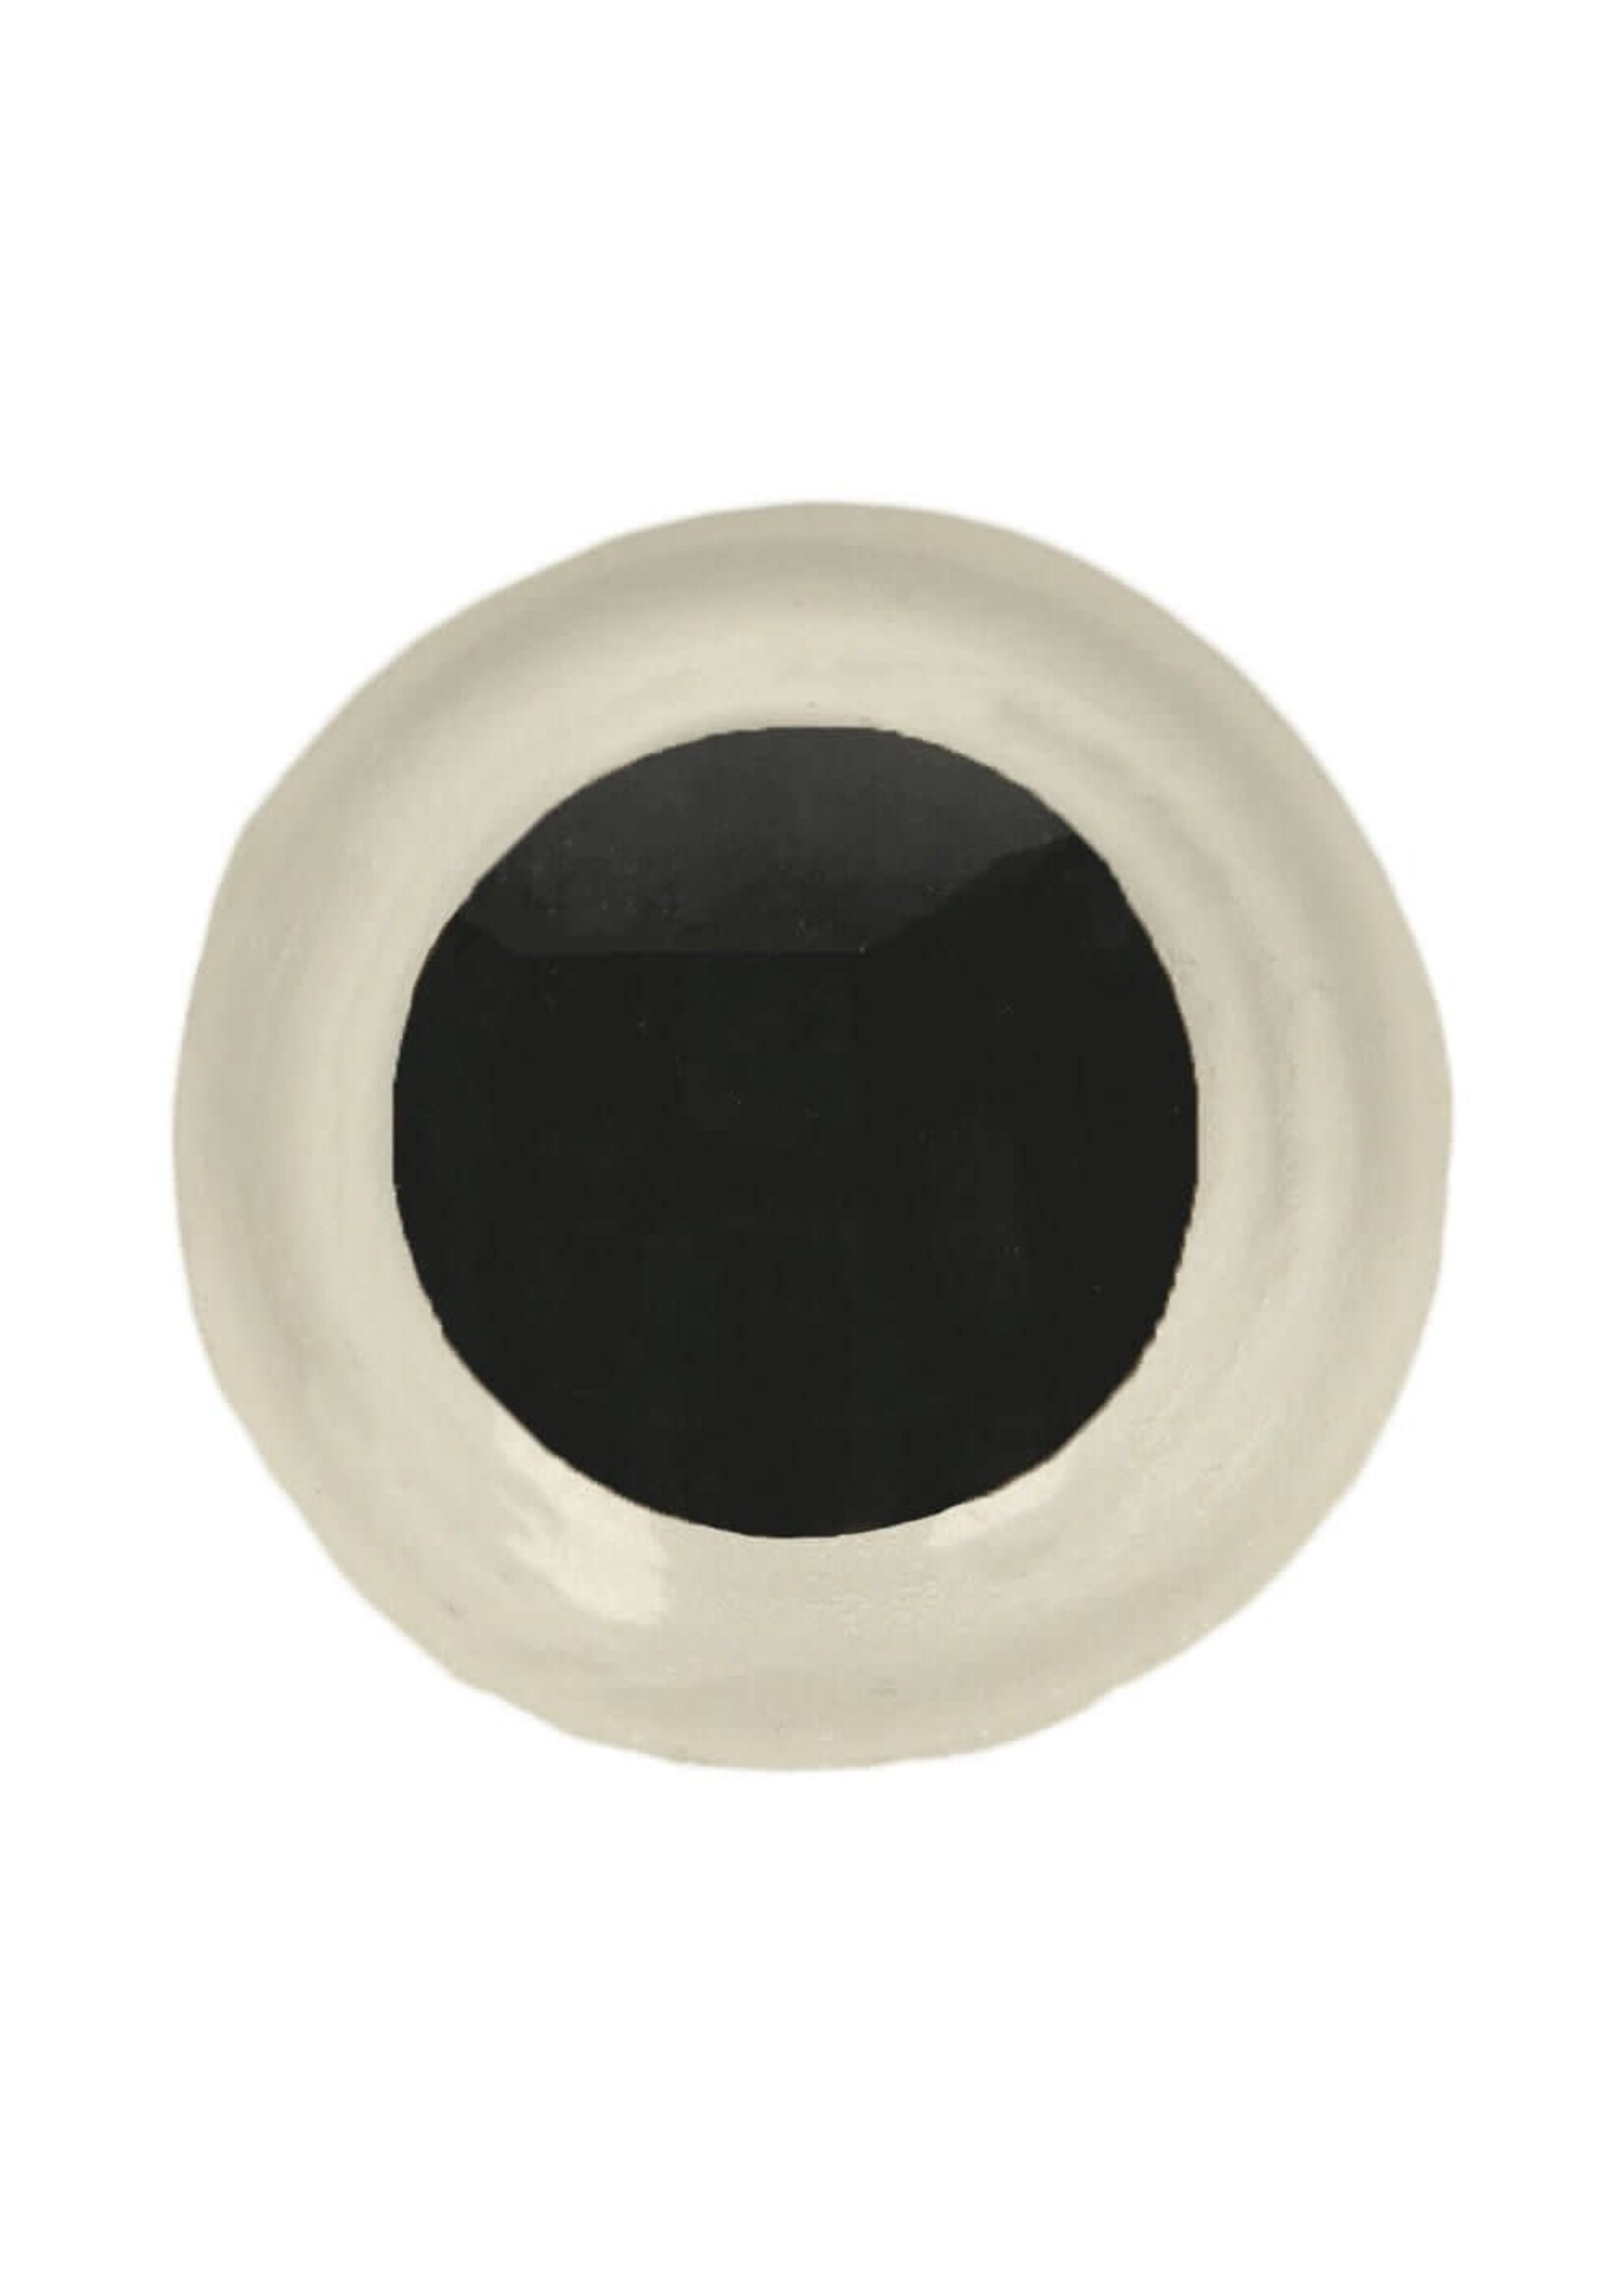 Veiligheidsogen - Tweekleurig Wit-Zwart 10mm - per 4